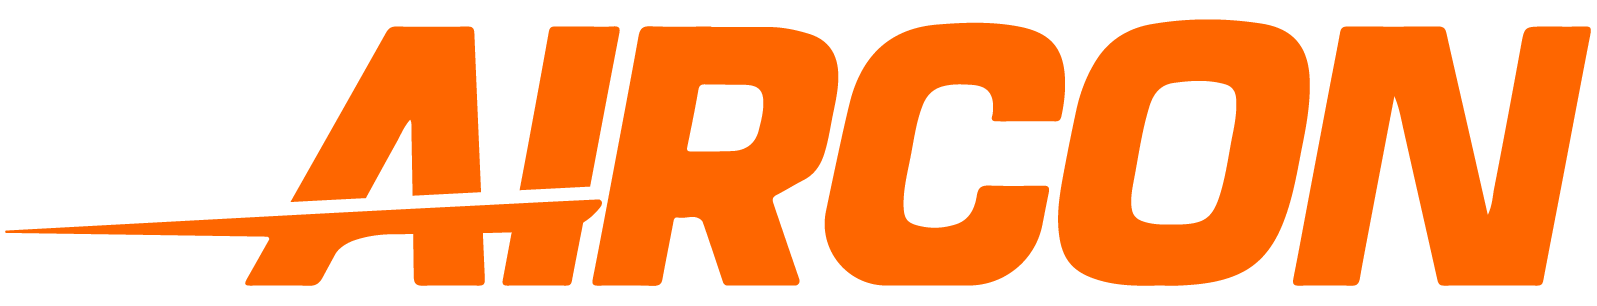 Aircon Logo